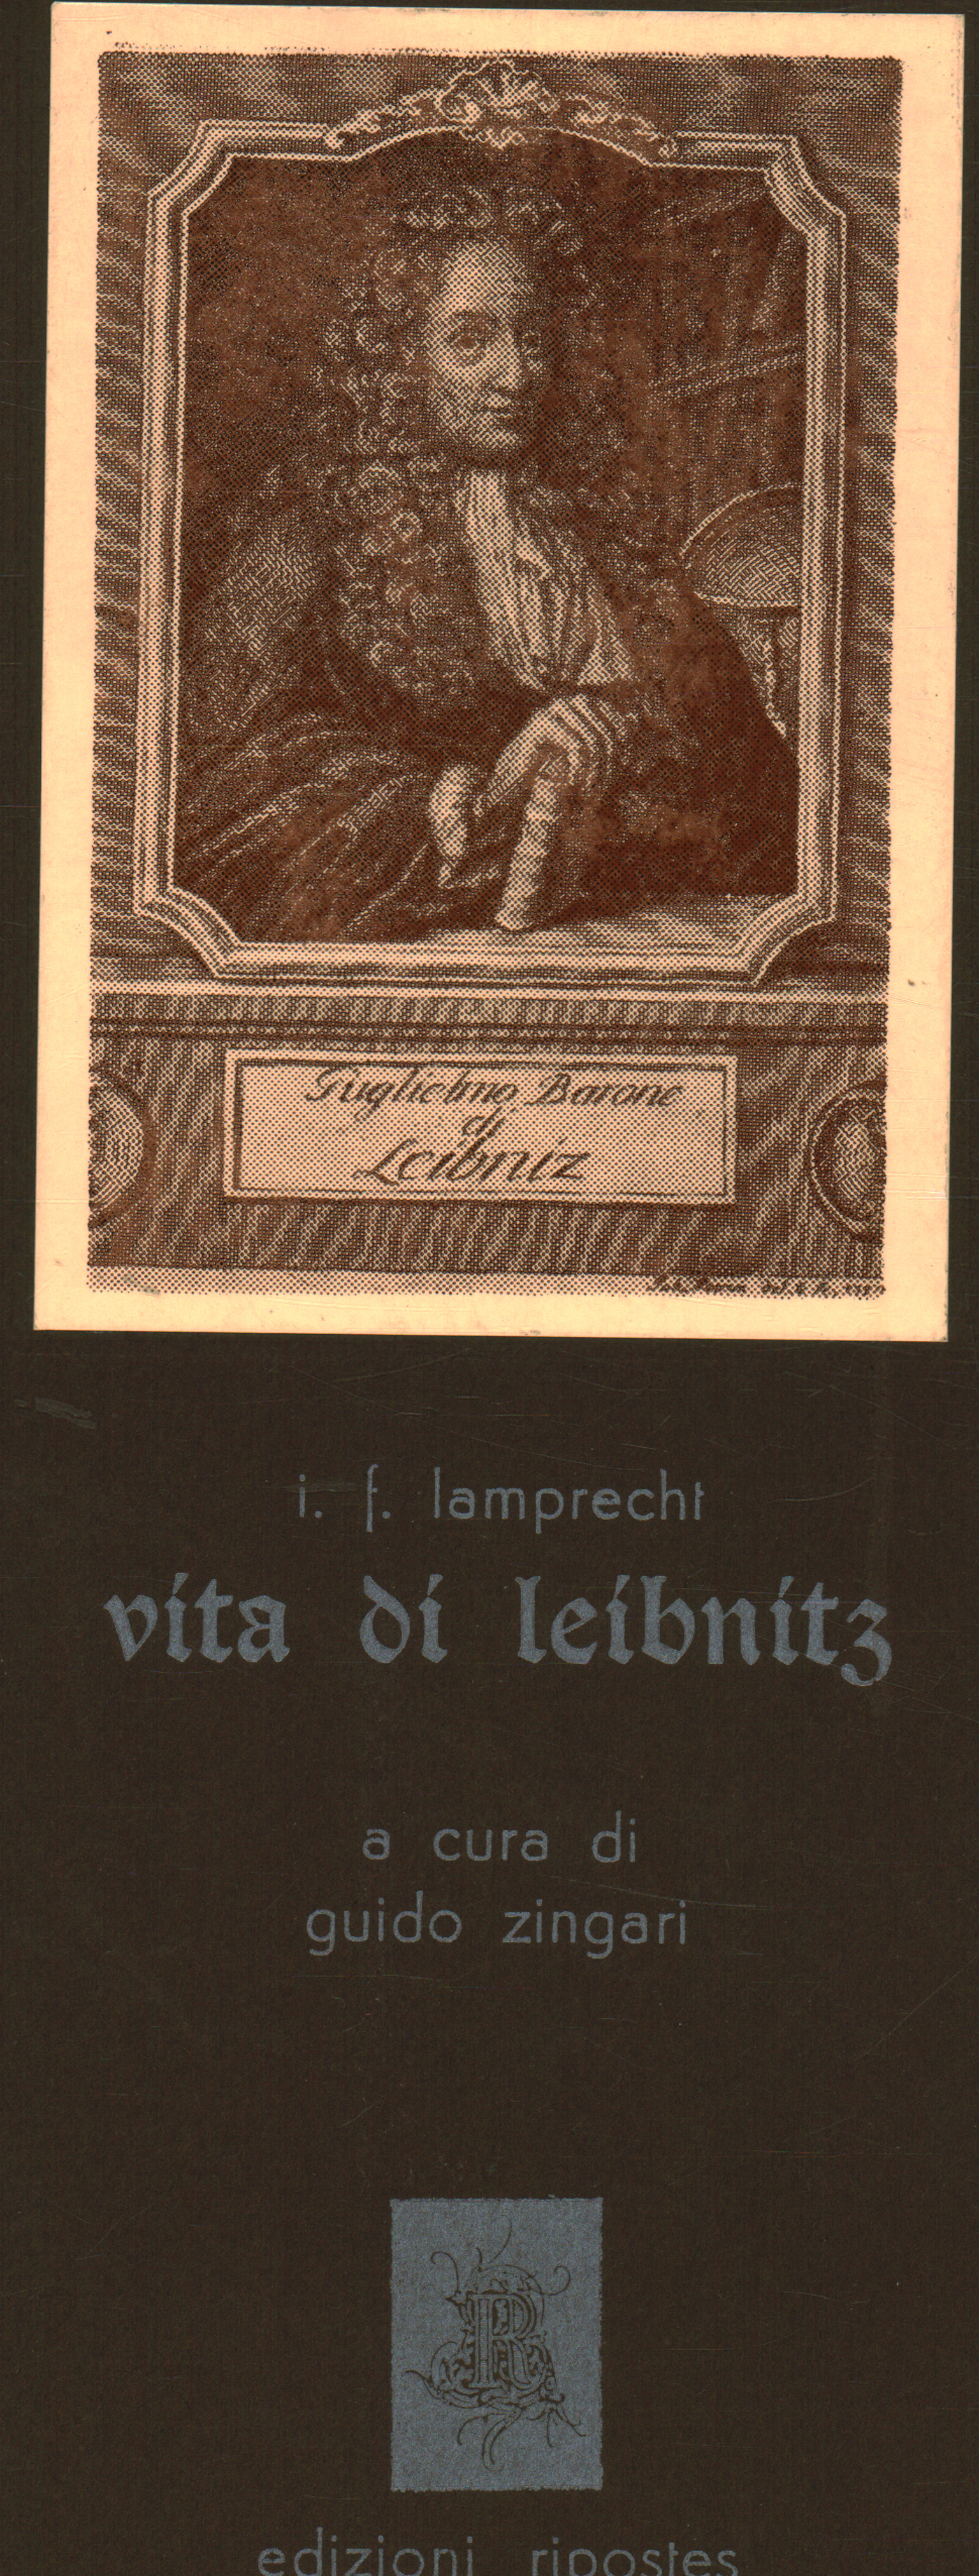 Vida de Leibnitz, I. F. Lamprecht